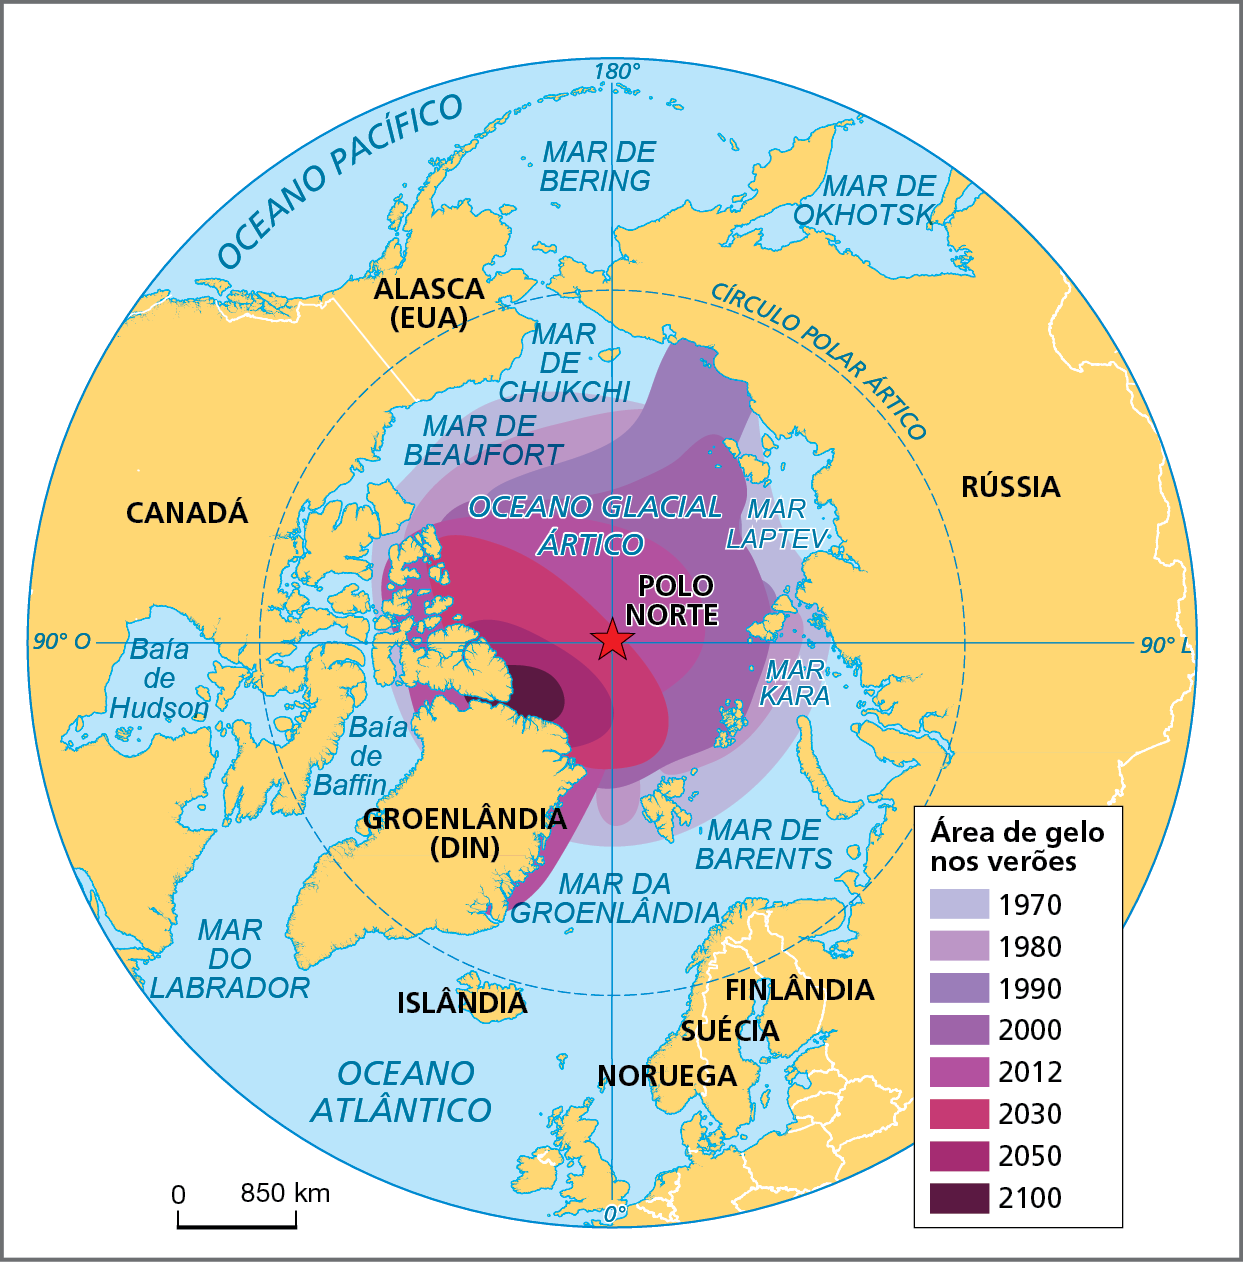 Mapa. O degelo no Ártico – 1980 e 2020 (mês de setembro). Mapa do Ártico com a representação das áreas de gelo nos verões desde 1970. A representação foi elaborada a partir de uma modelagem que indica a evolução da área de gelo até o ano de 2100. Para cada intervalo de ano, usa-se uma tonalidade de cor para indicar a extensão da coberta de gelo, desde 1970 (em lilás claro) até 2100 (porção em roxo). Em 1970, a área de gelo era mais extensa, abarcando a maior parte do Oceano Glacial Ártico, compreendendo o Mar Laptev, Mar Kara, Mar de Beufort e o Mar de Chukchi. A partir de 1980 (área em lilás), a cobertura de gelo apresenta um recuo em relação ao período anterior. A esse processo de recuo, com diminuição da área de gelo, continua a ocorrer gradativamente nos intervalos seguintes, até o ano de 2100, quando, segundo o modelo, a área de gelo vai se restringir a uma porção do litoral ao norte da Groenlândia (Dinamarca). Na parte inferior, à esquerda, escala de 0 a 850 quilômetros.